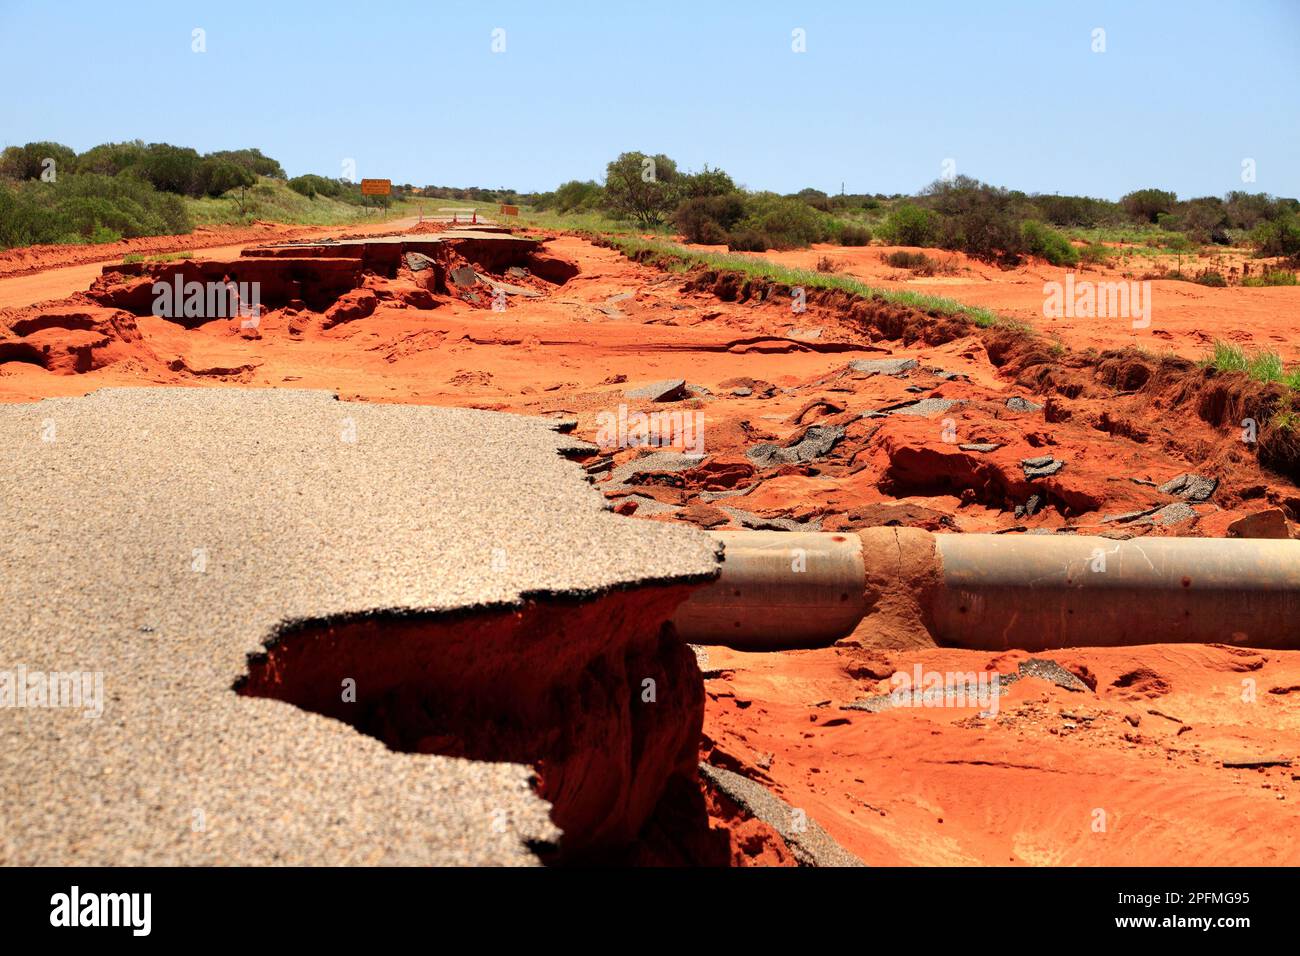 Damaged road due to flood water, Northwest Australia Stock Photo